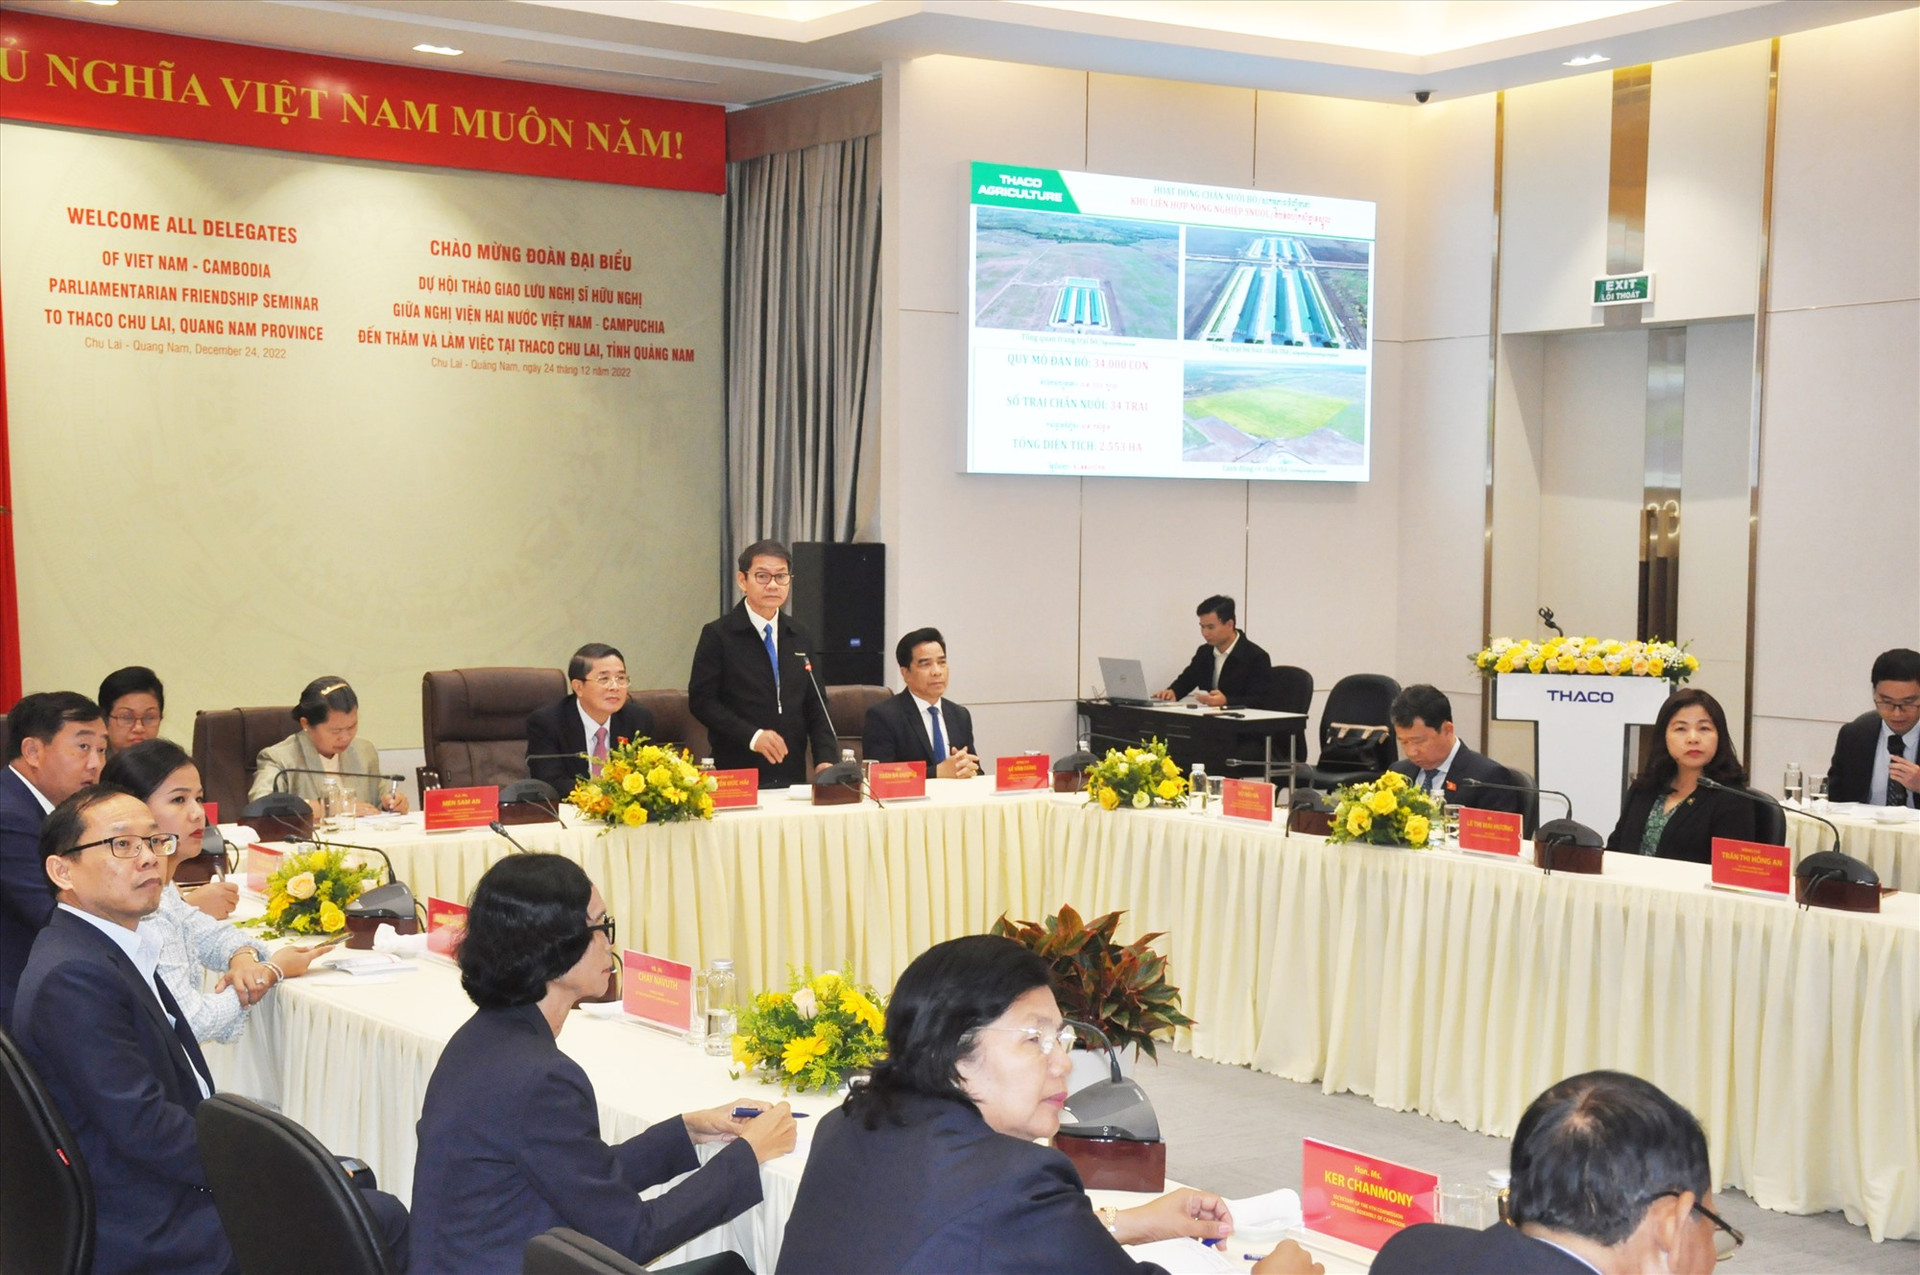 Ông Trần Bá Dương - Chủ tịch Hội đồng quản trị Thaco thông tin về dự án đầu tư phát triển nông nghiệp tại Campuchia. Ảnh: N.Đ